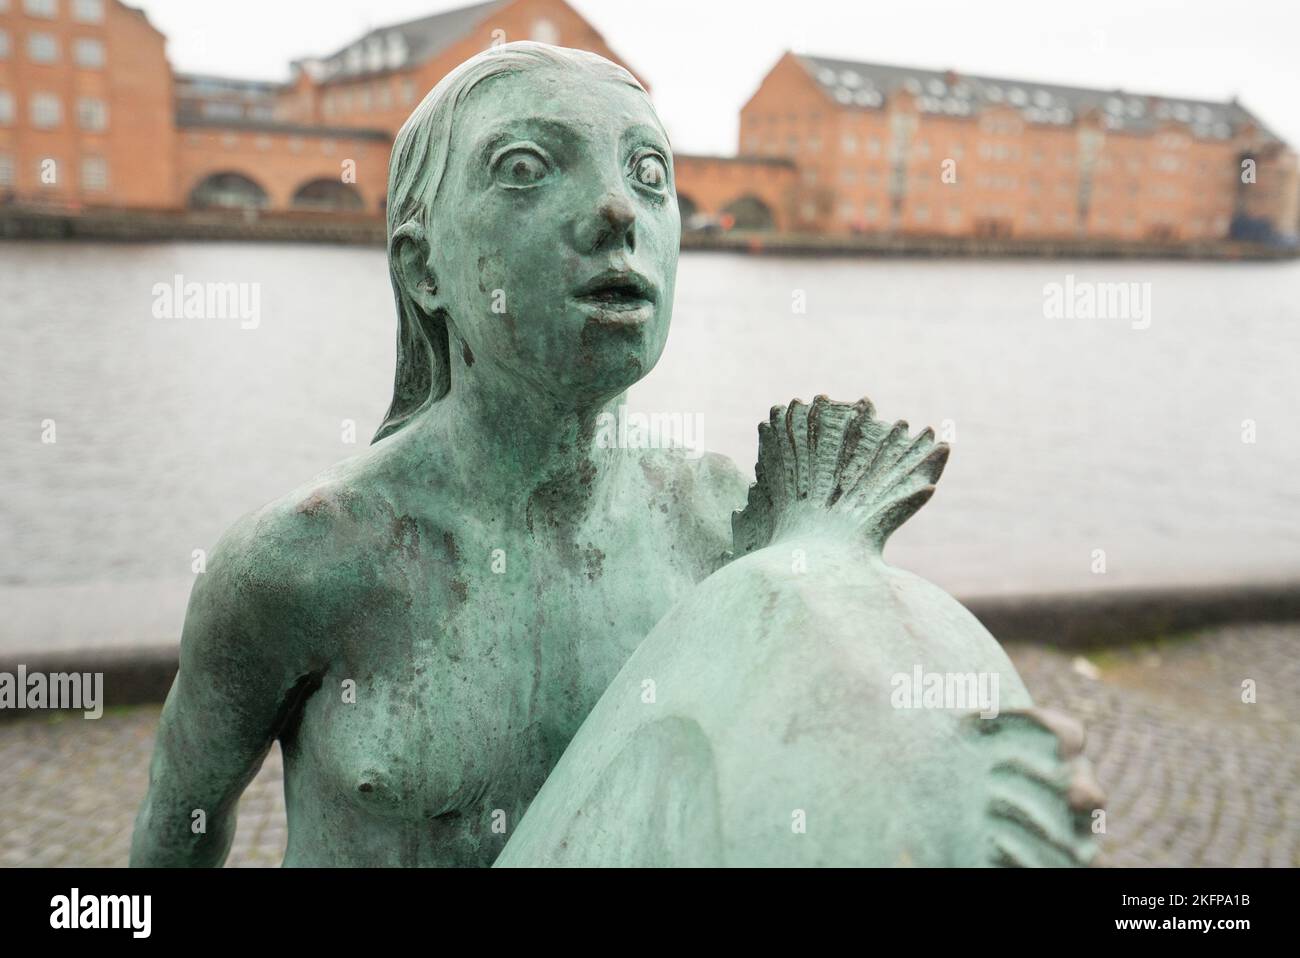 Statue de la Sirène (Carl-Nielsen) devant la Bibliothèque royale danoise de Copenhague, Danemark. Statue de la Sirène en diamant noir d'Anne Marie Carl-Nielsen. Banque D'Images